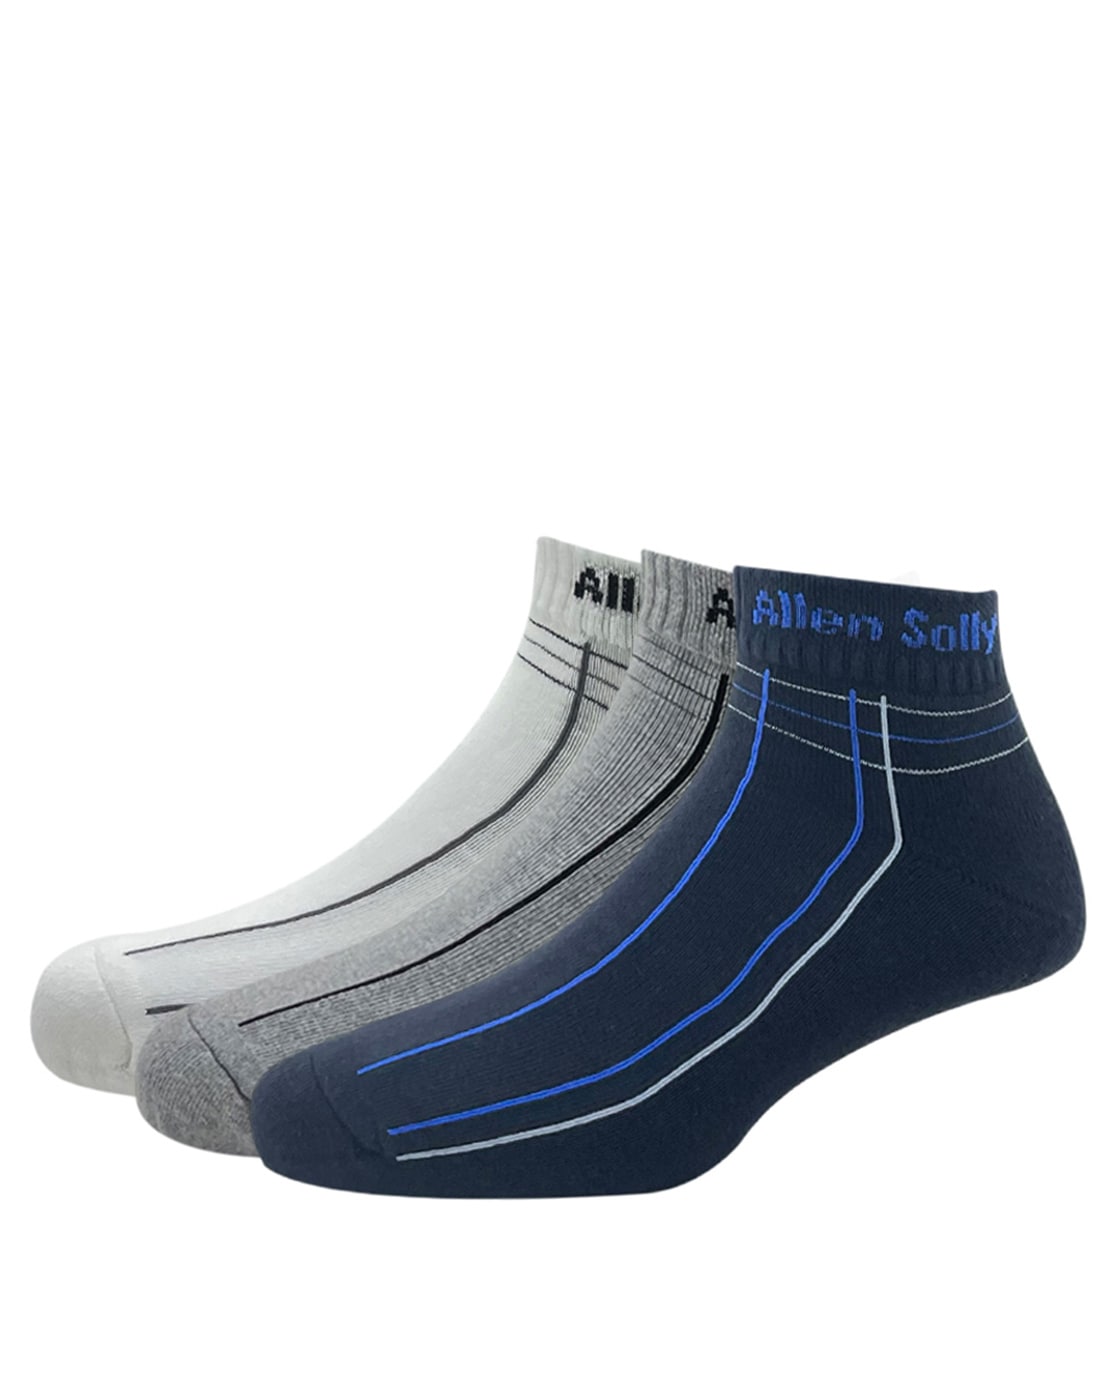 Allen Socks